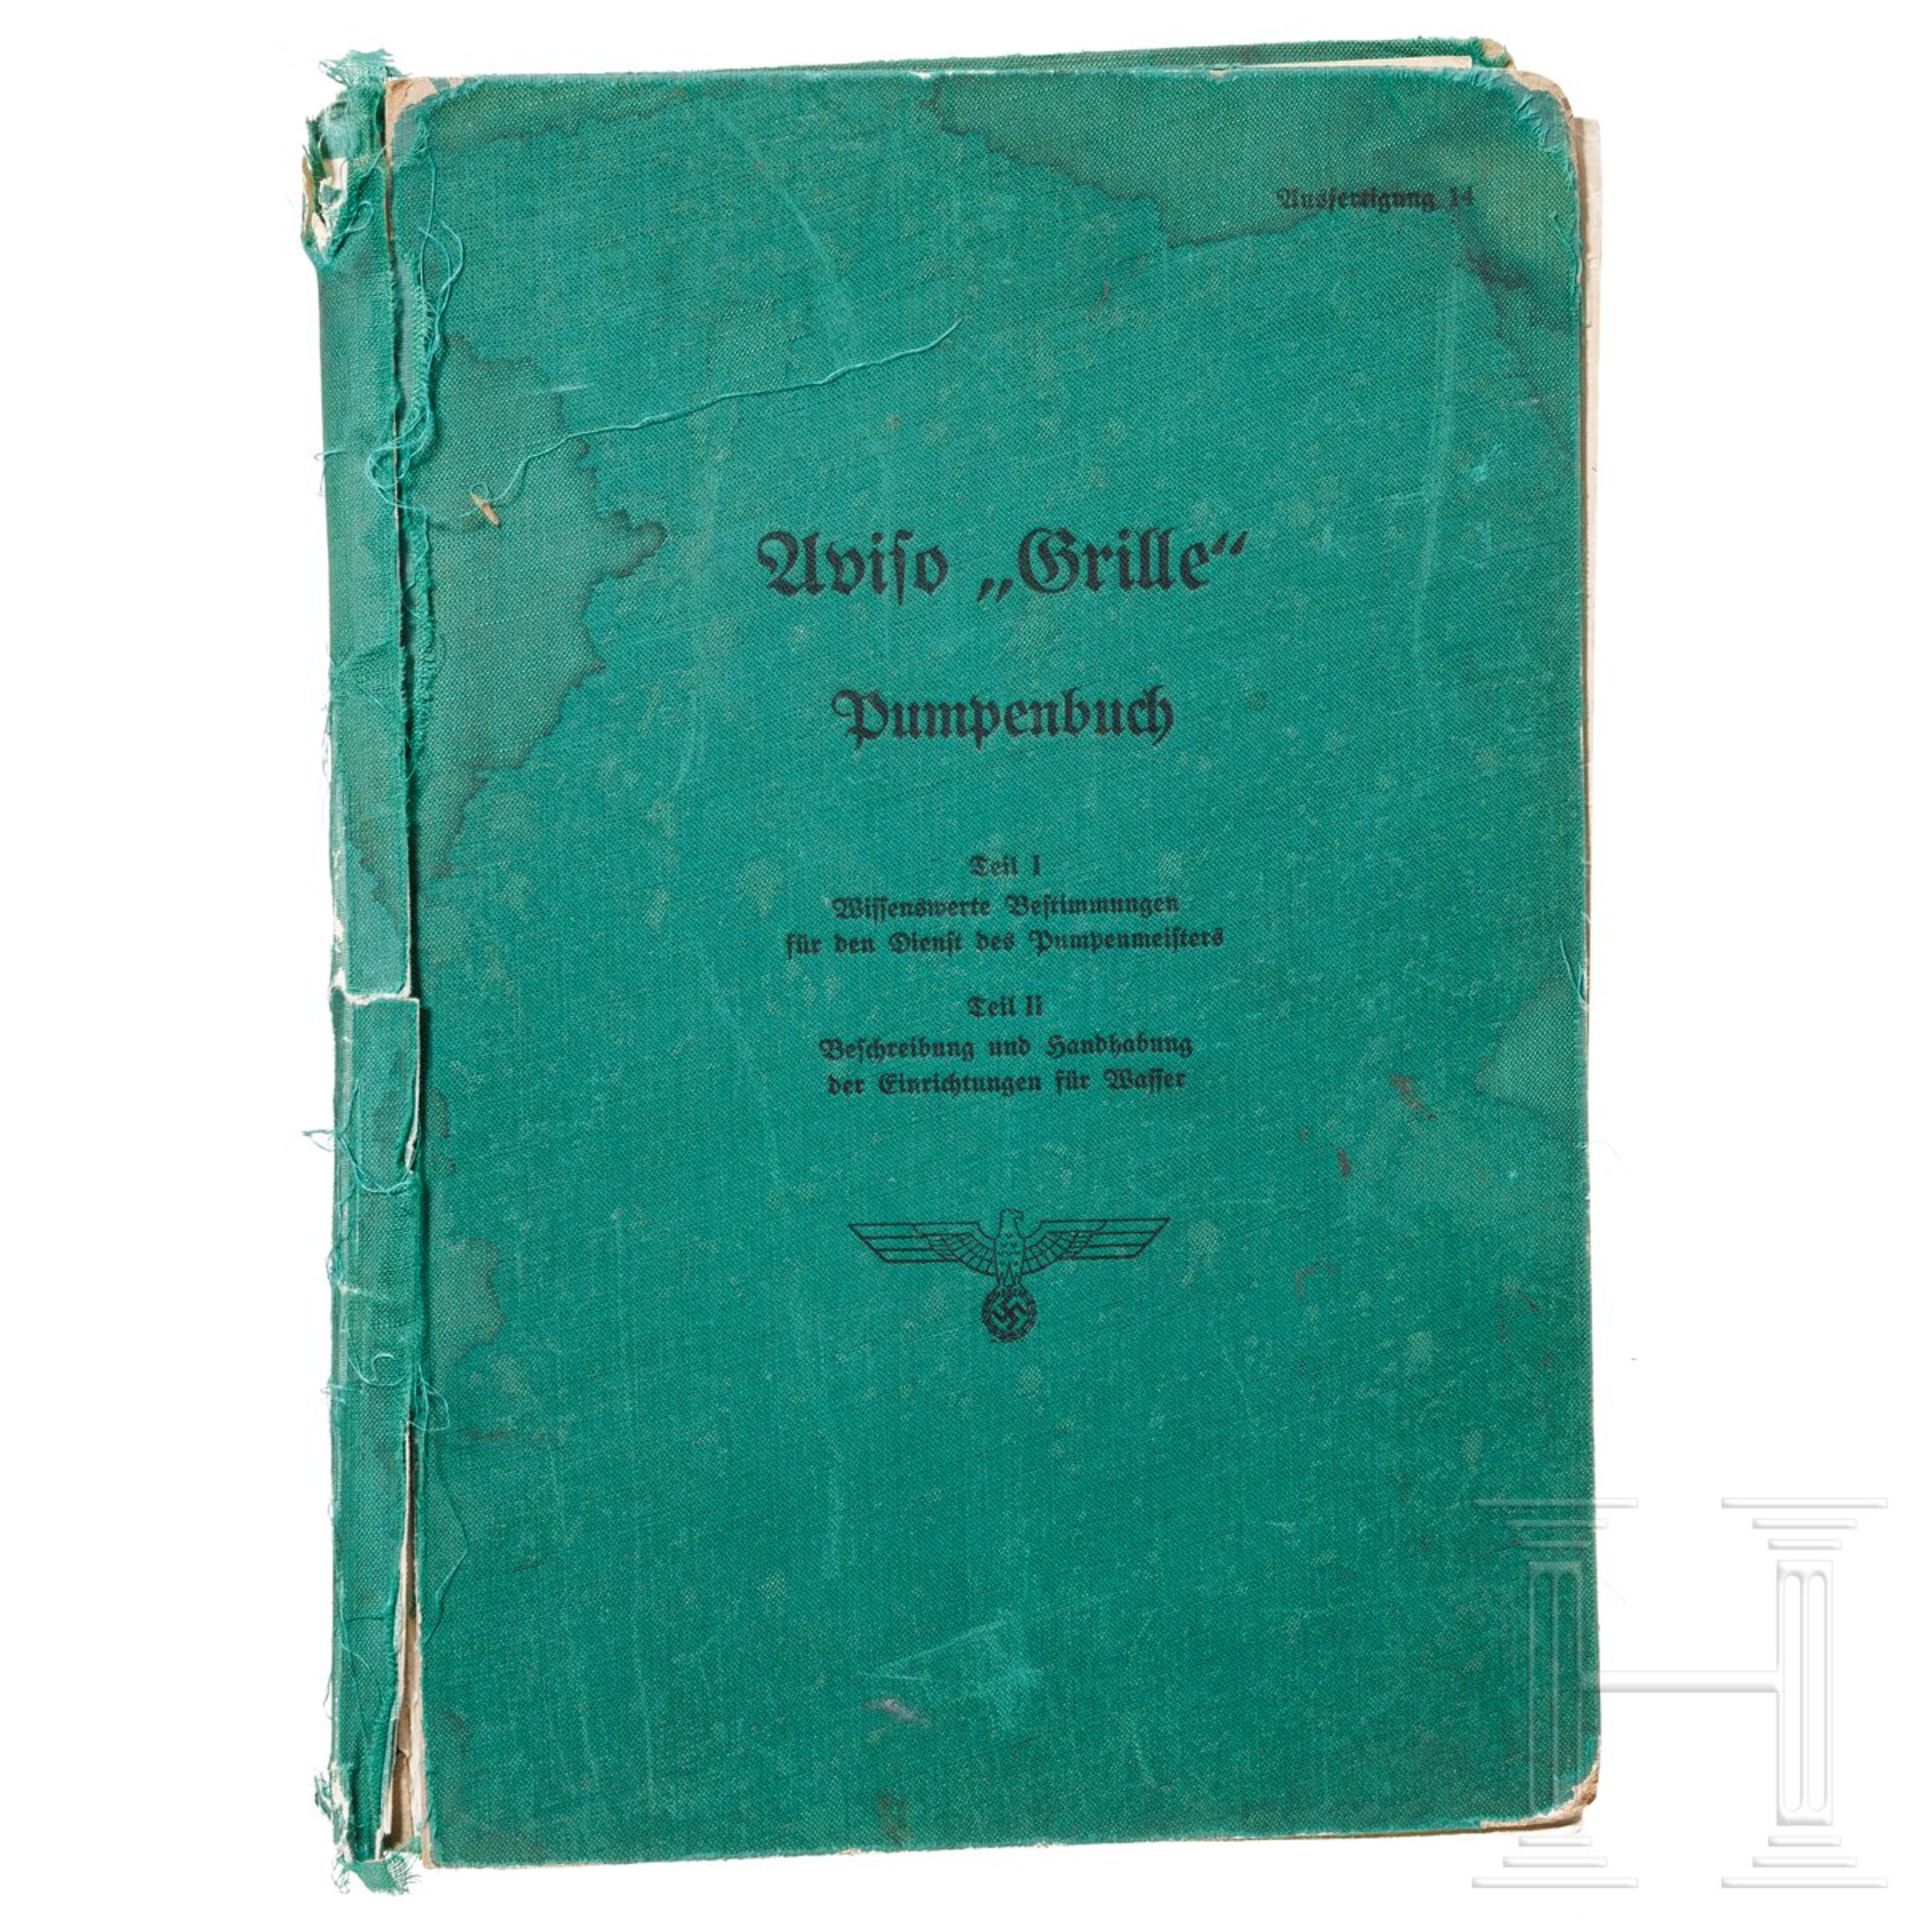 "Aviso 'Grille' - Pumpenbuch", Blohm & Voß, 14. Ausfertigung 1940 - Image 2 of 5